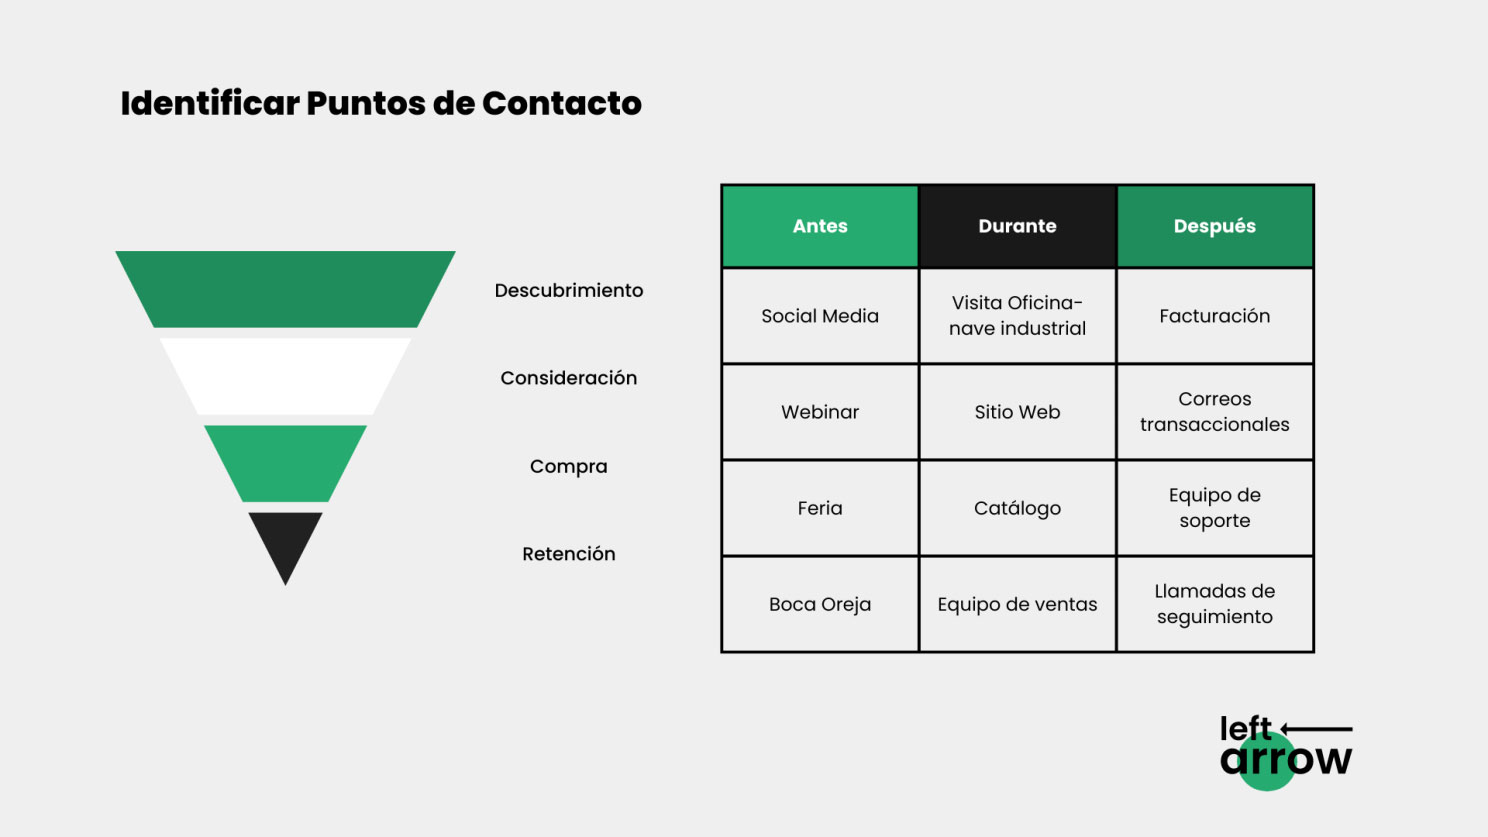 Tipos de puntos de contacto de los clientes potenciales en cualquier etapa